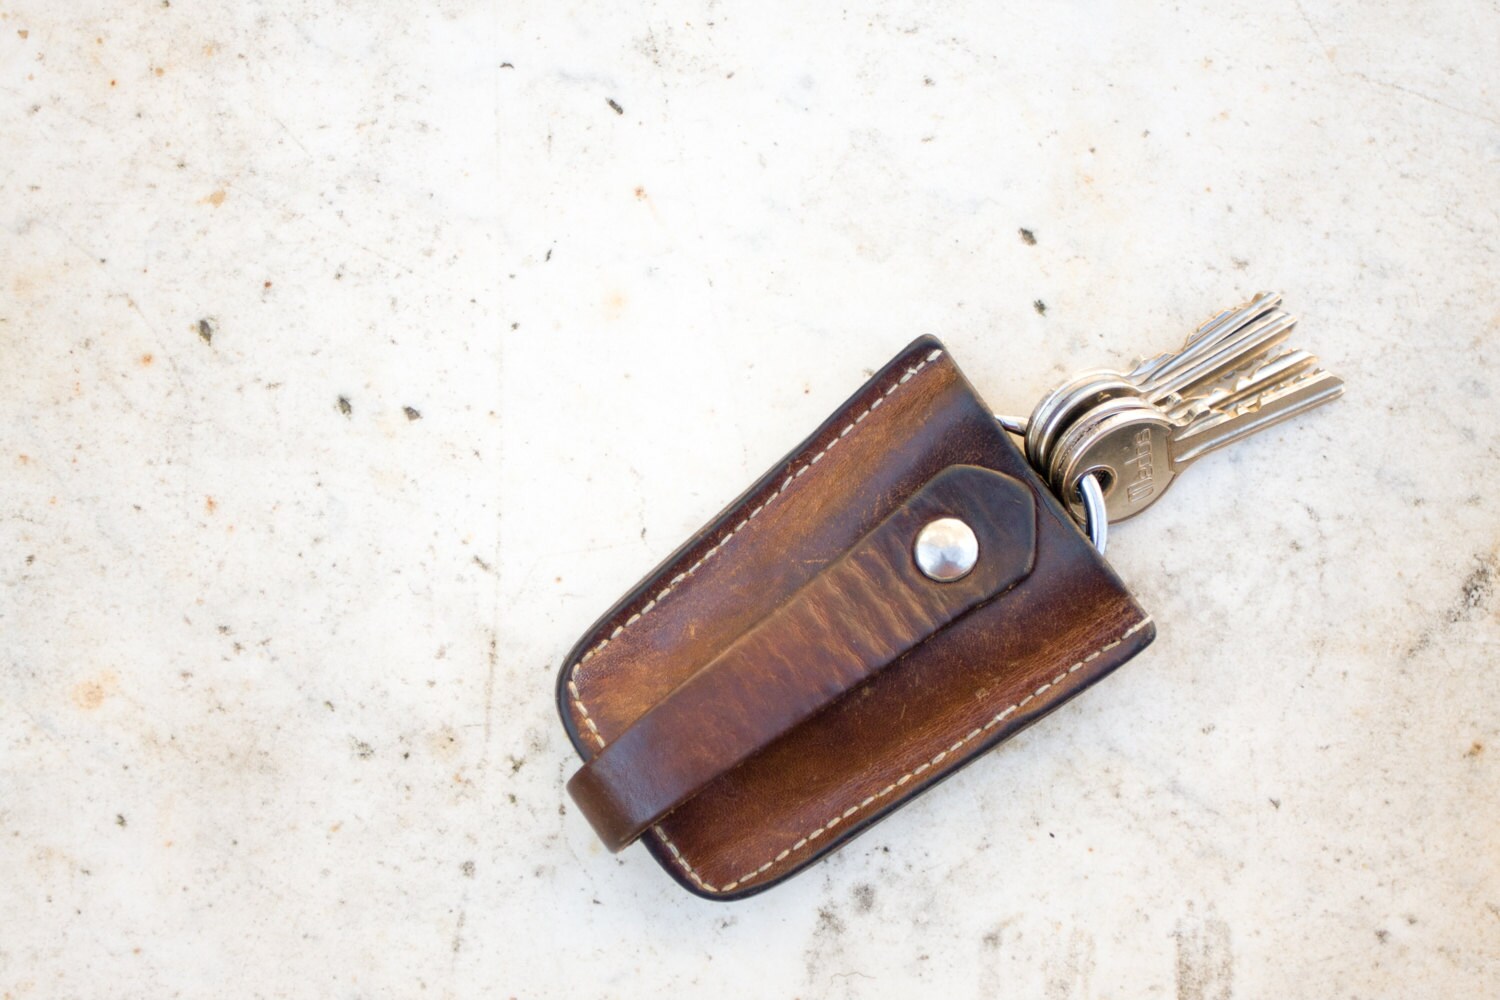 vintage key holder